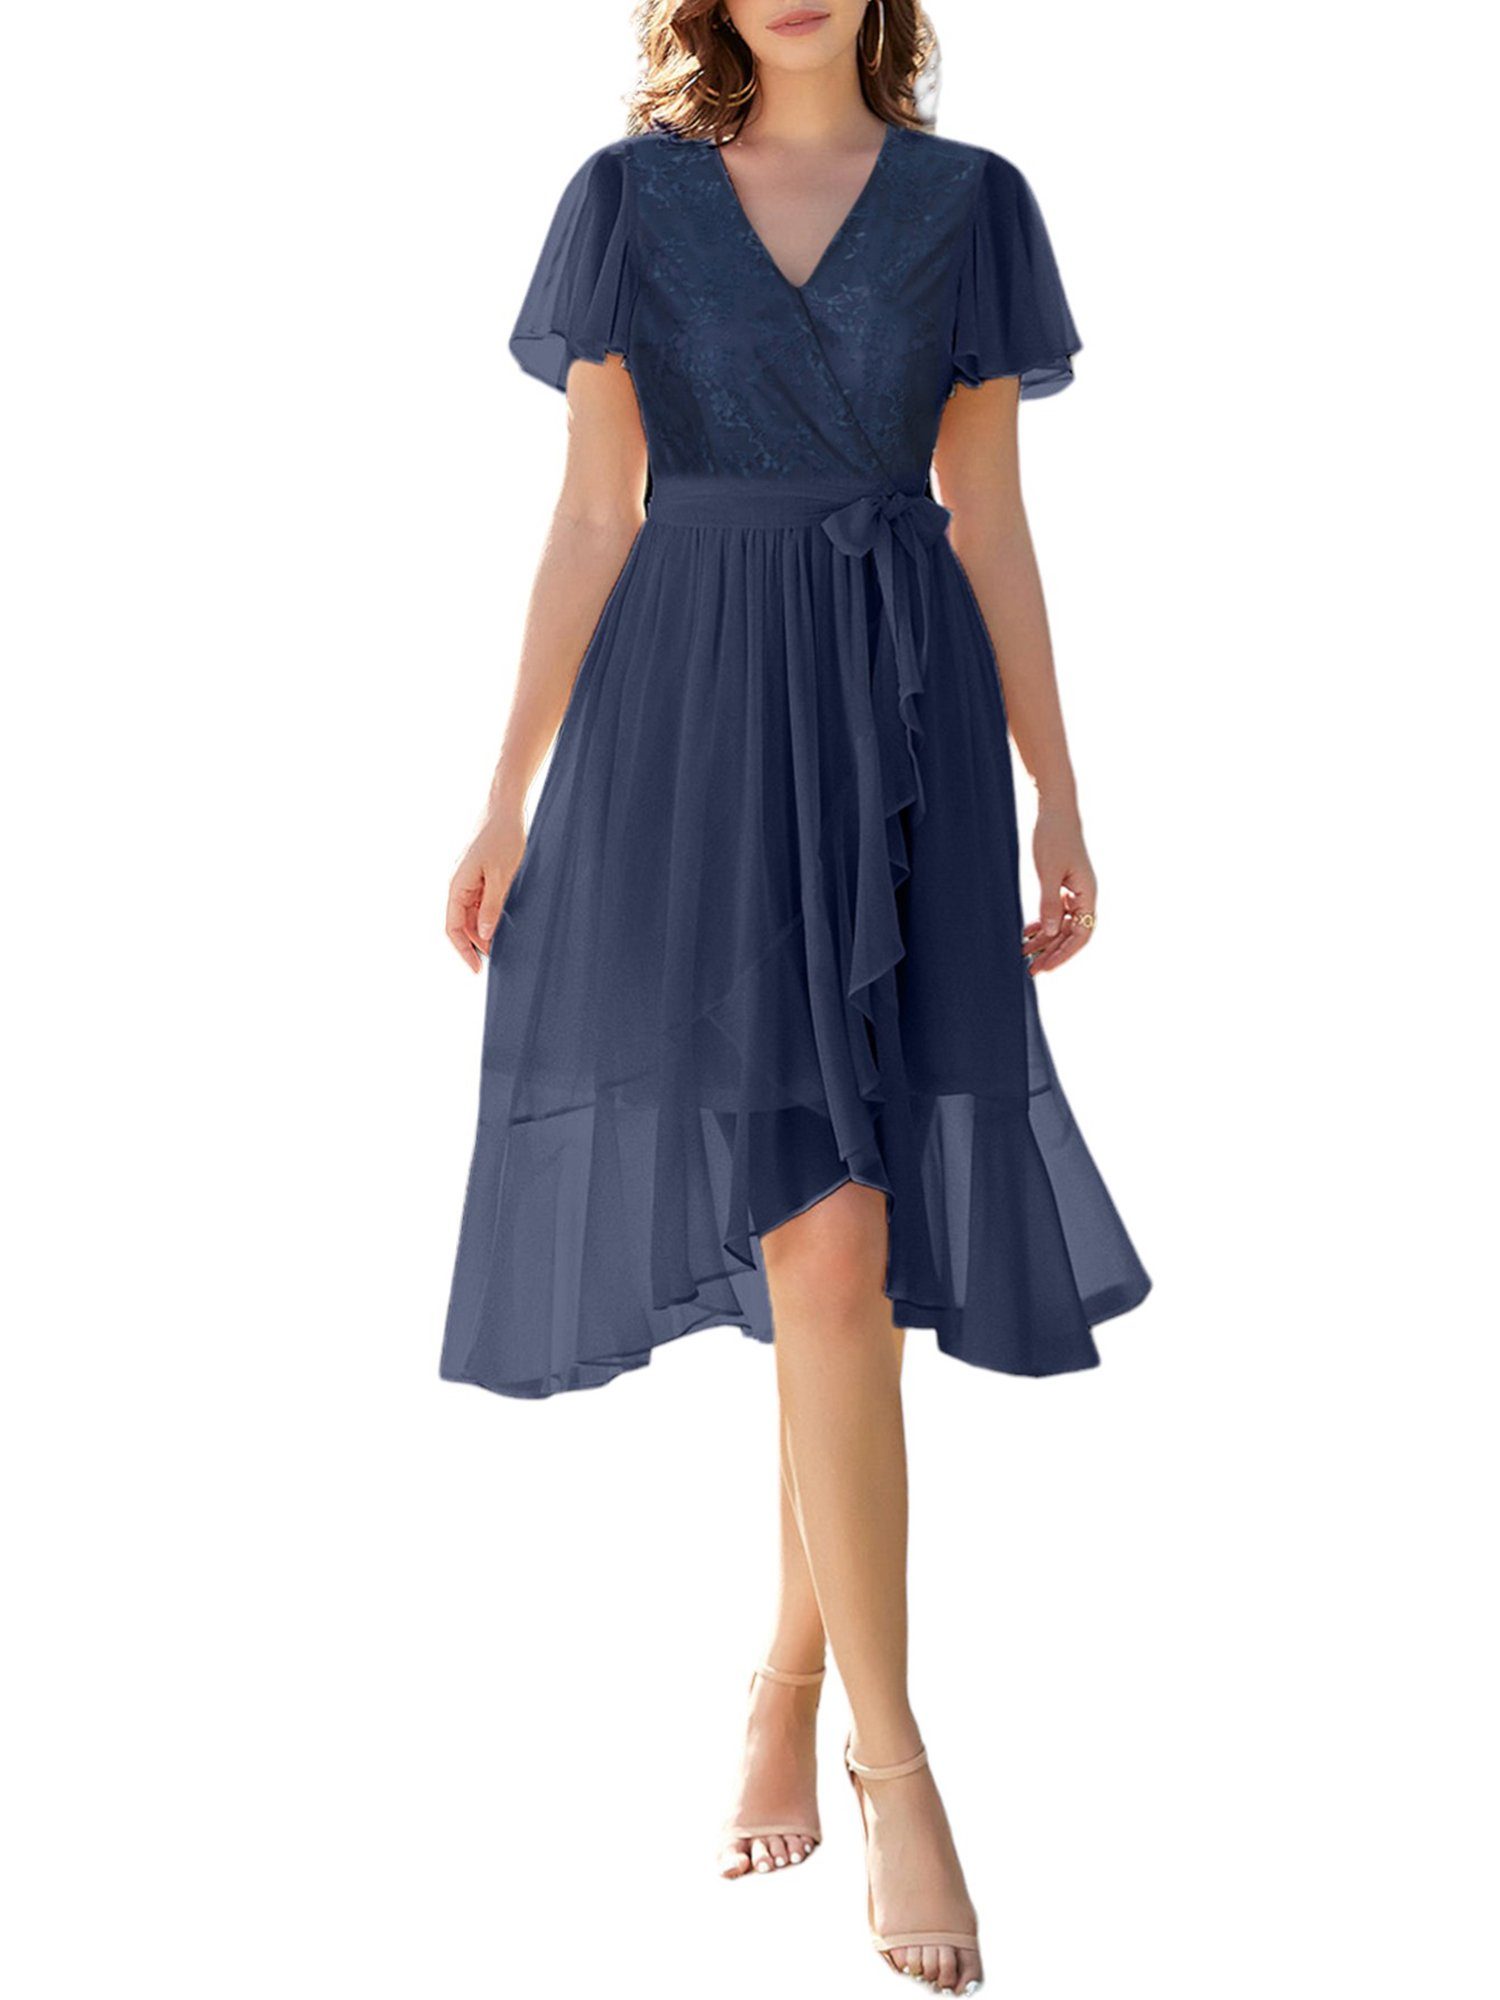 PYL Chiffonkleid Damen Elegant Spitzen A-Linien-Kleid mit Gürtel 36-44 Größe